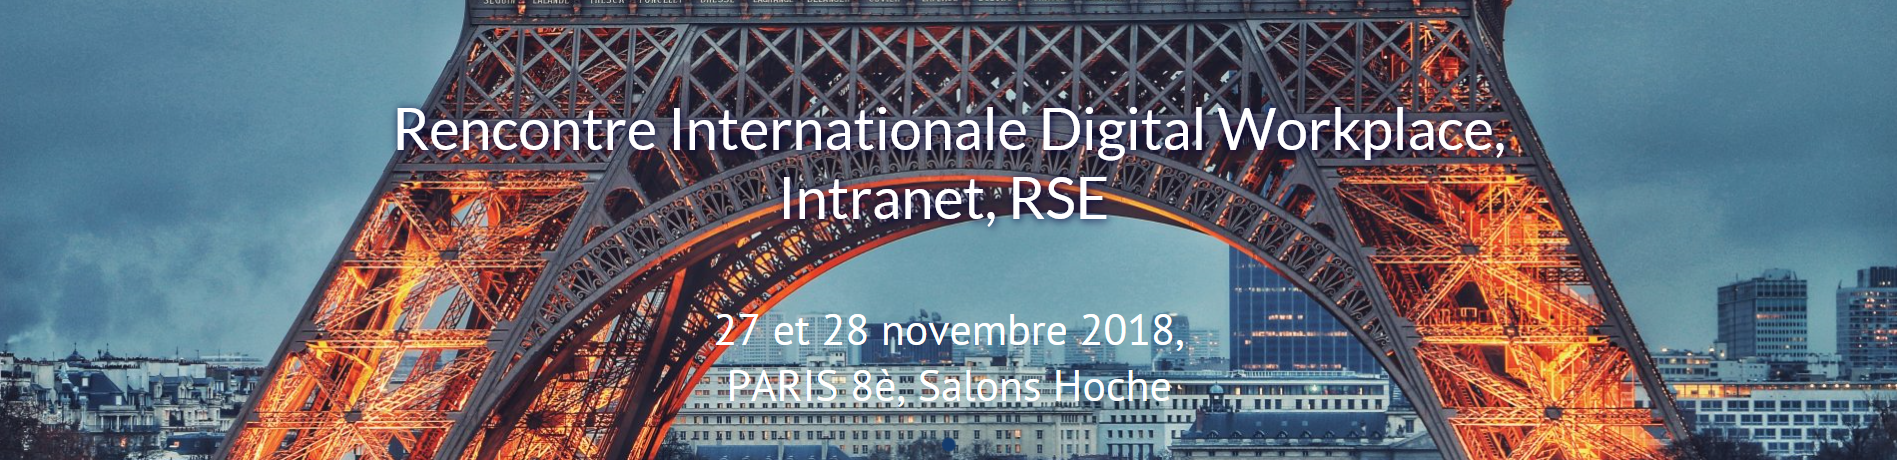 Infeeny sponsor de la rencontre internationale digital workplace intranet et rse